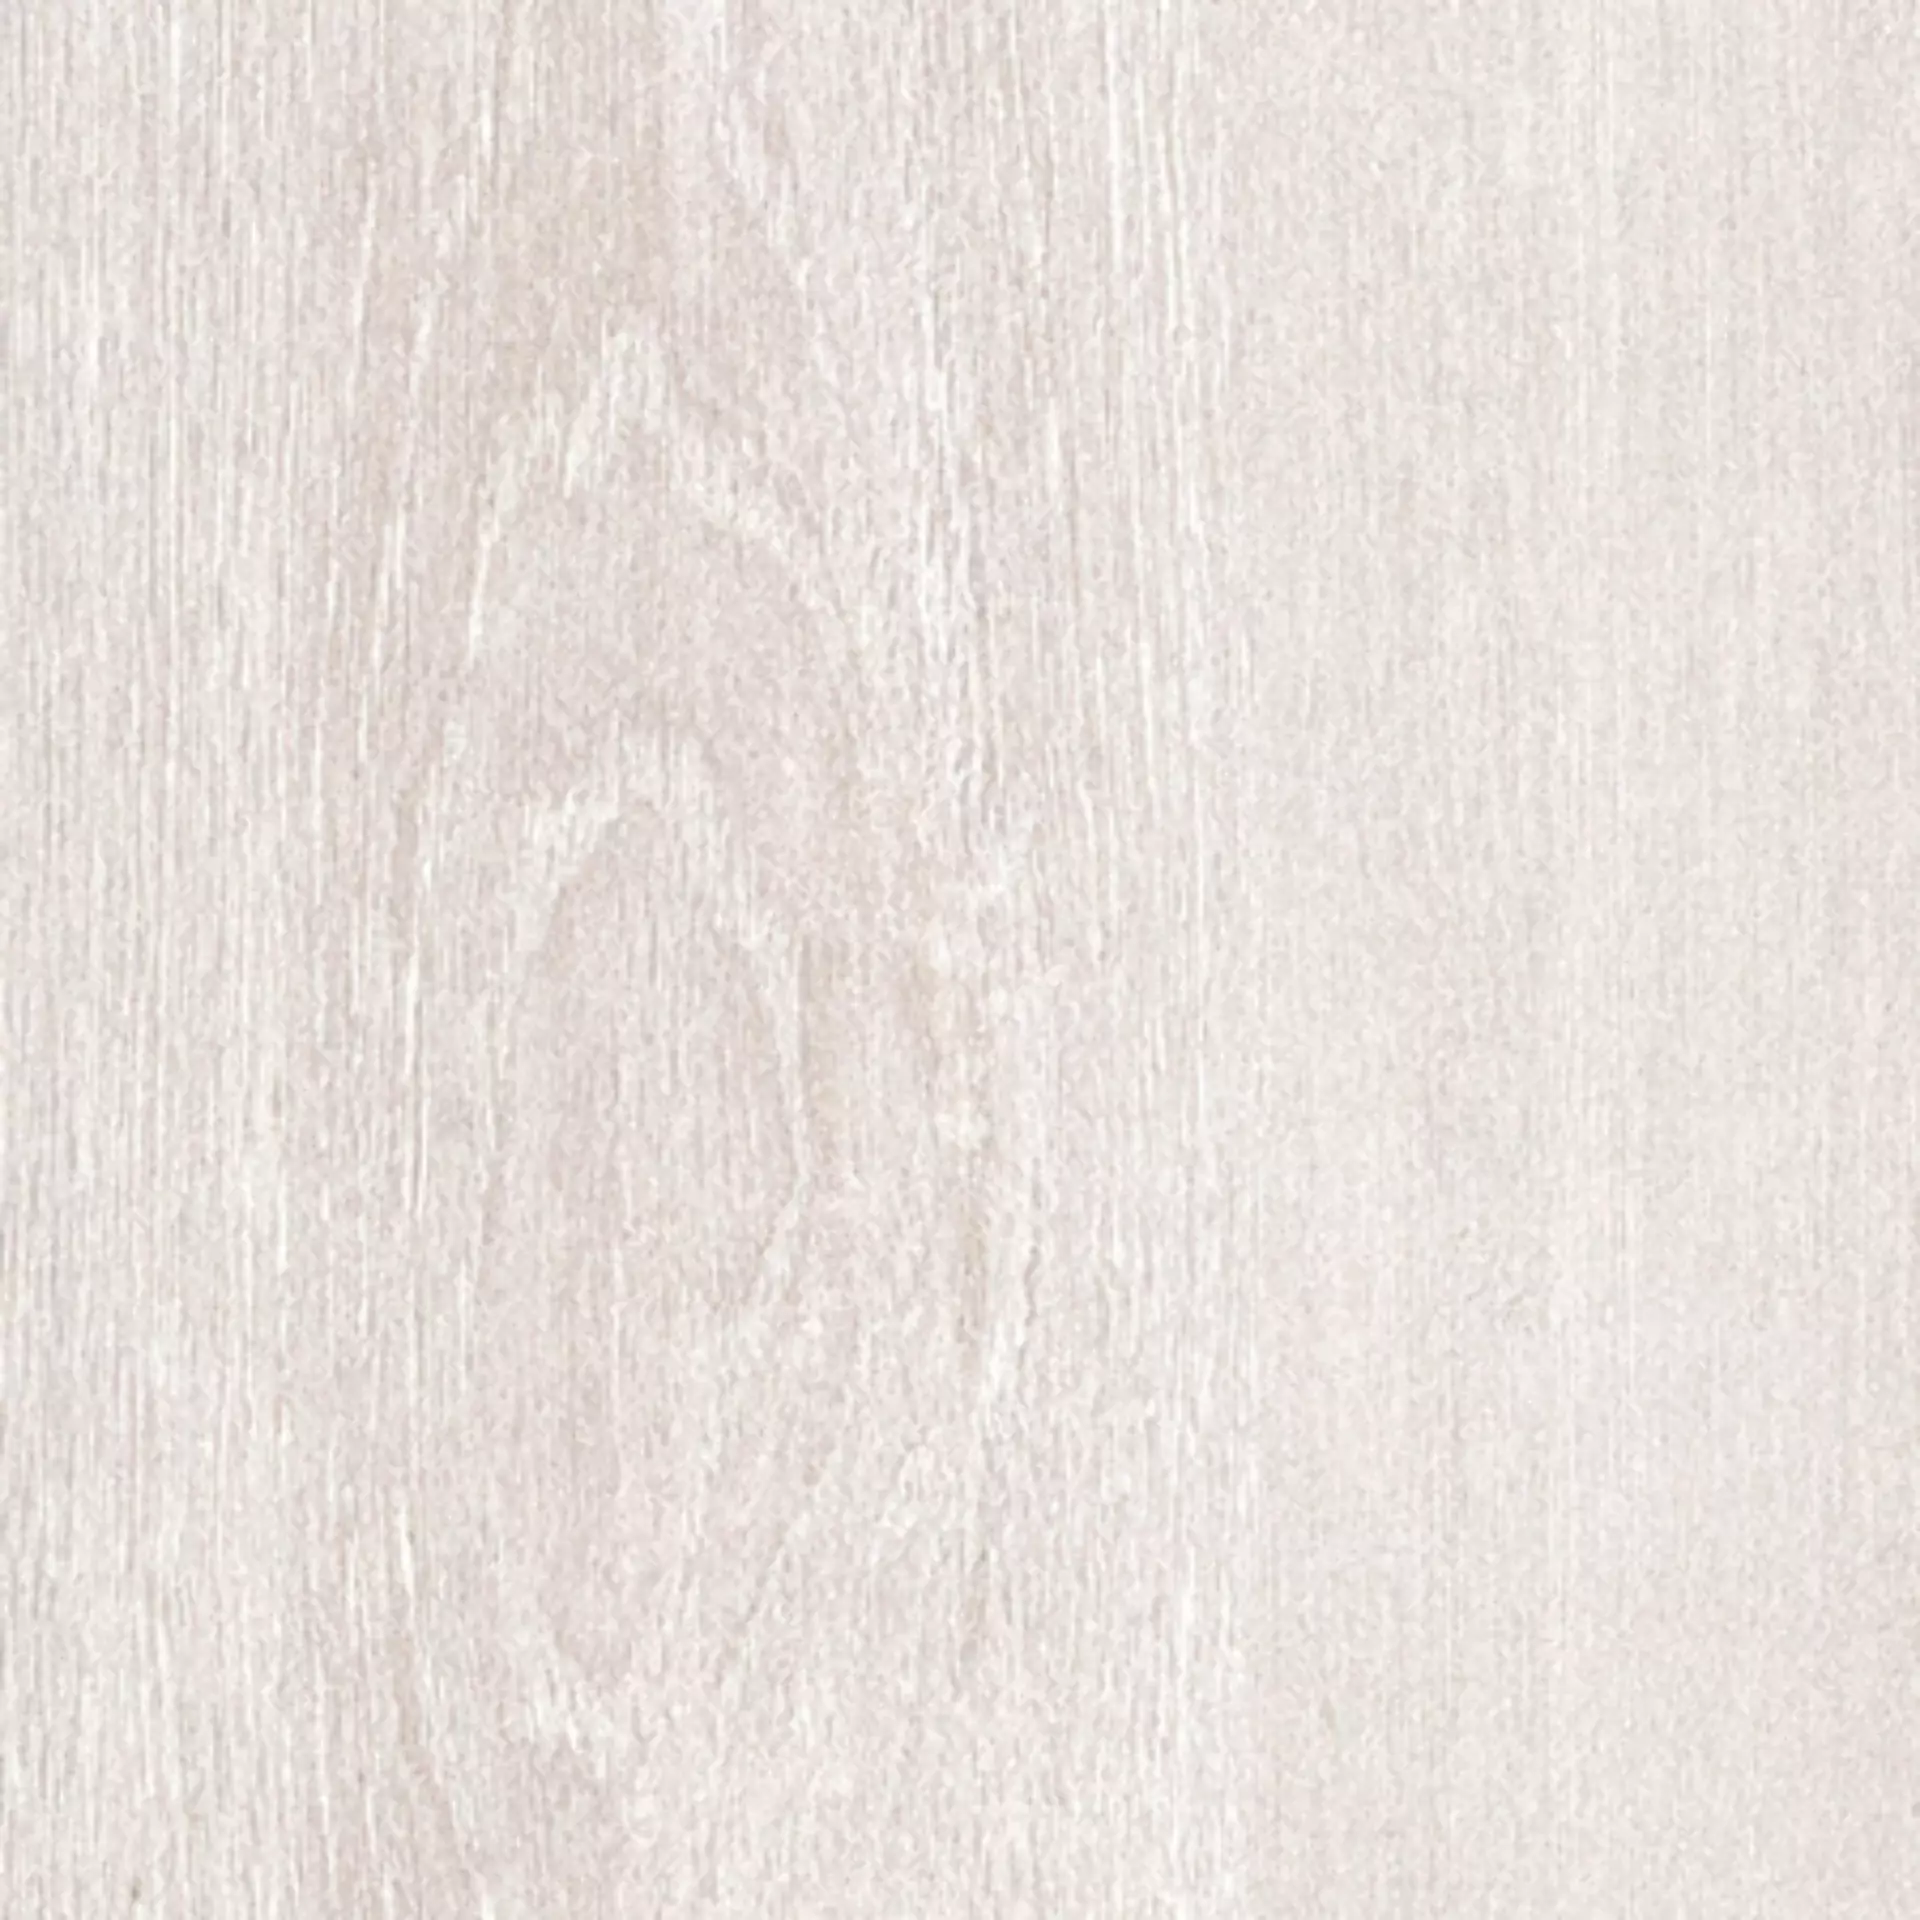 Casalgrande Planks Bianco Naturale – Matt 10060082 20x240cm rectified 6mm